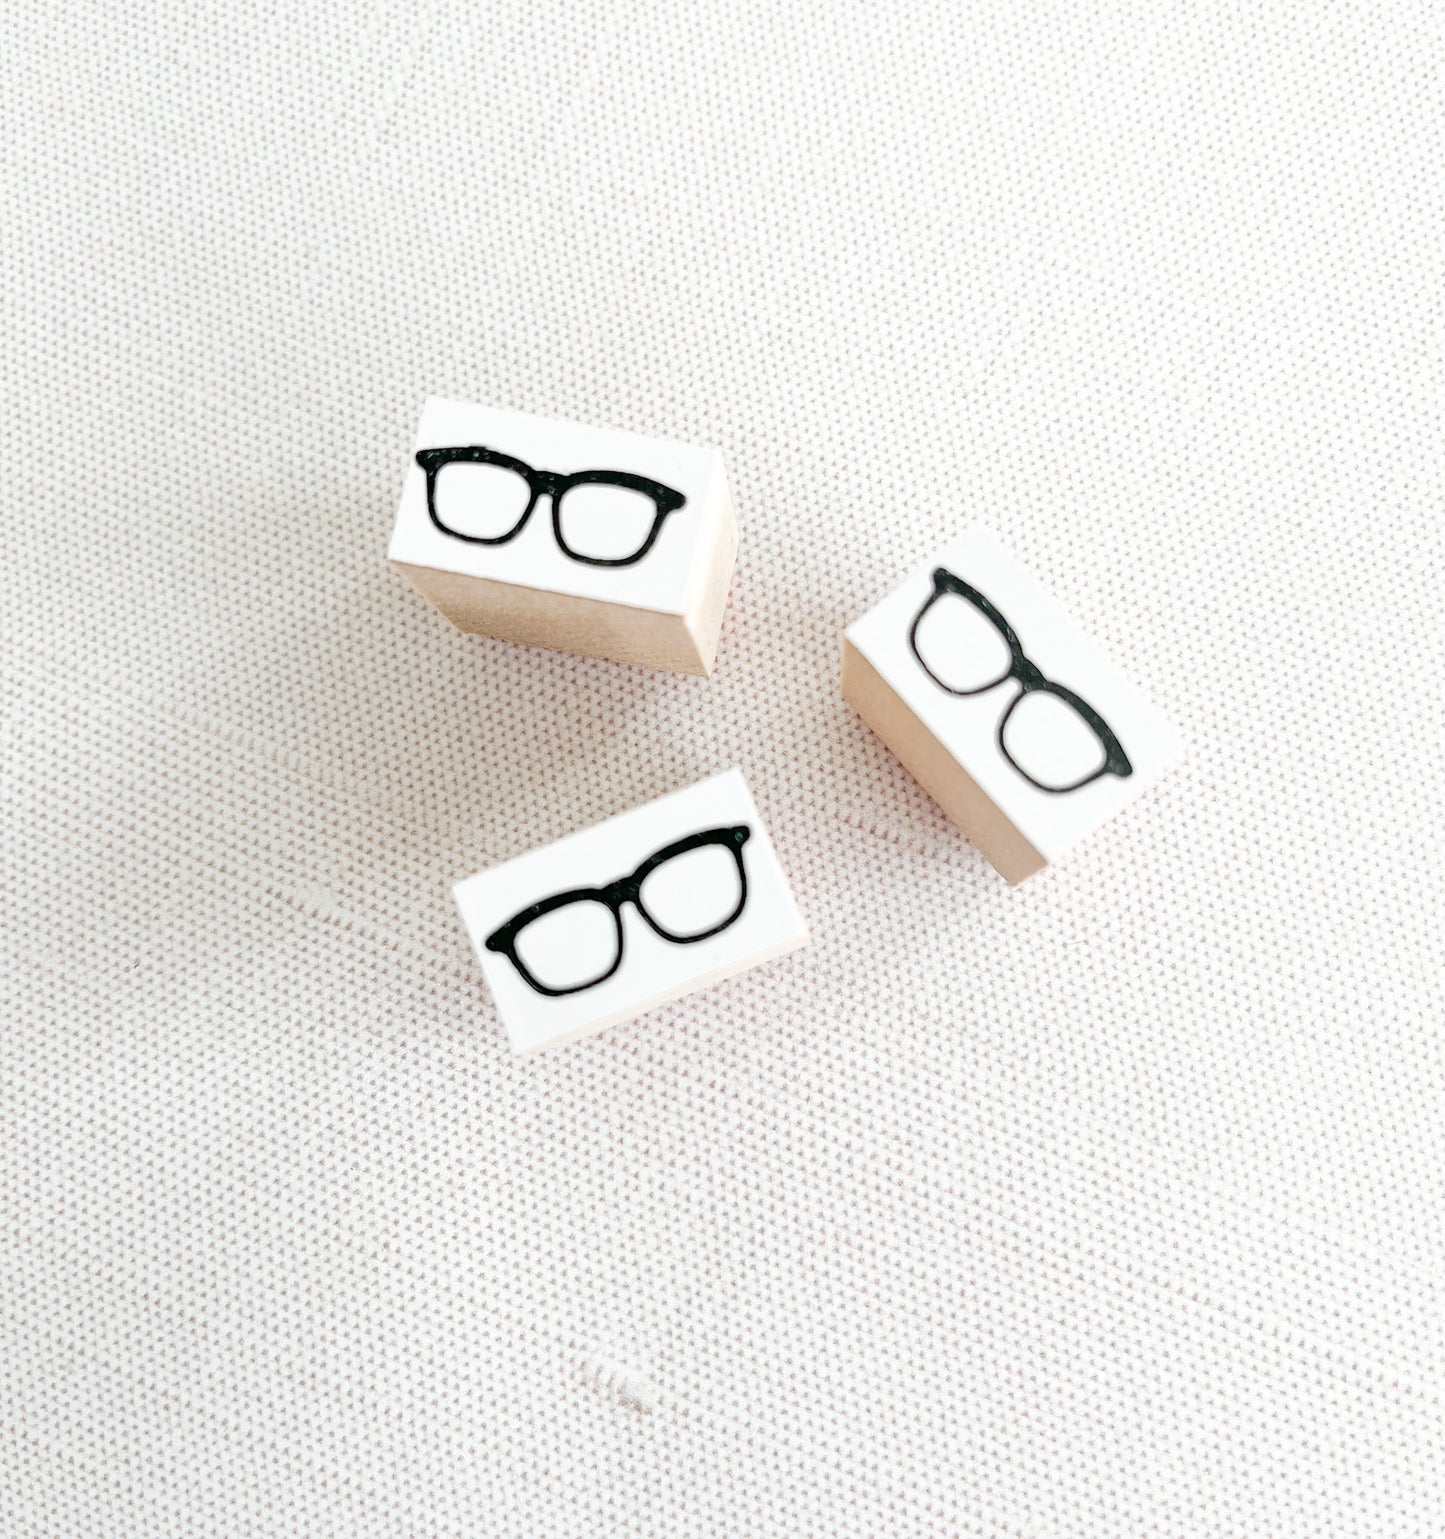 Hanko Eyeglasses Rubber Stamp